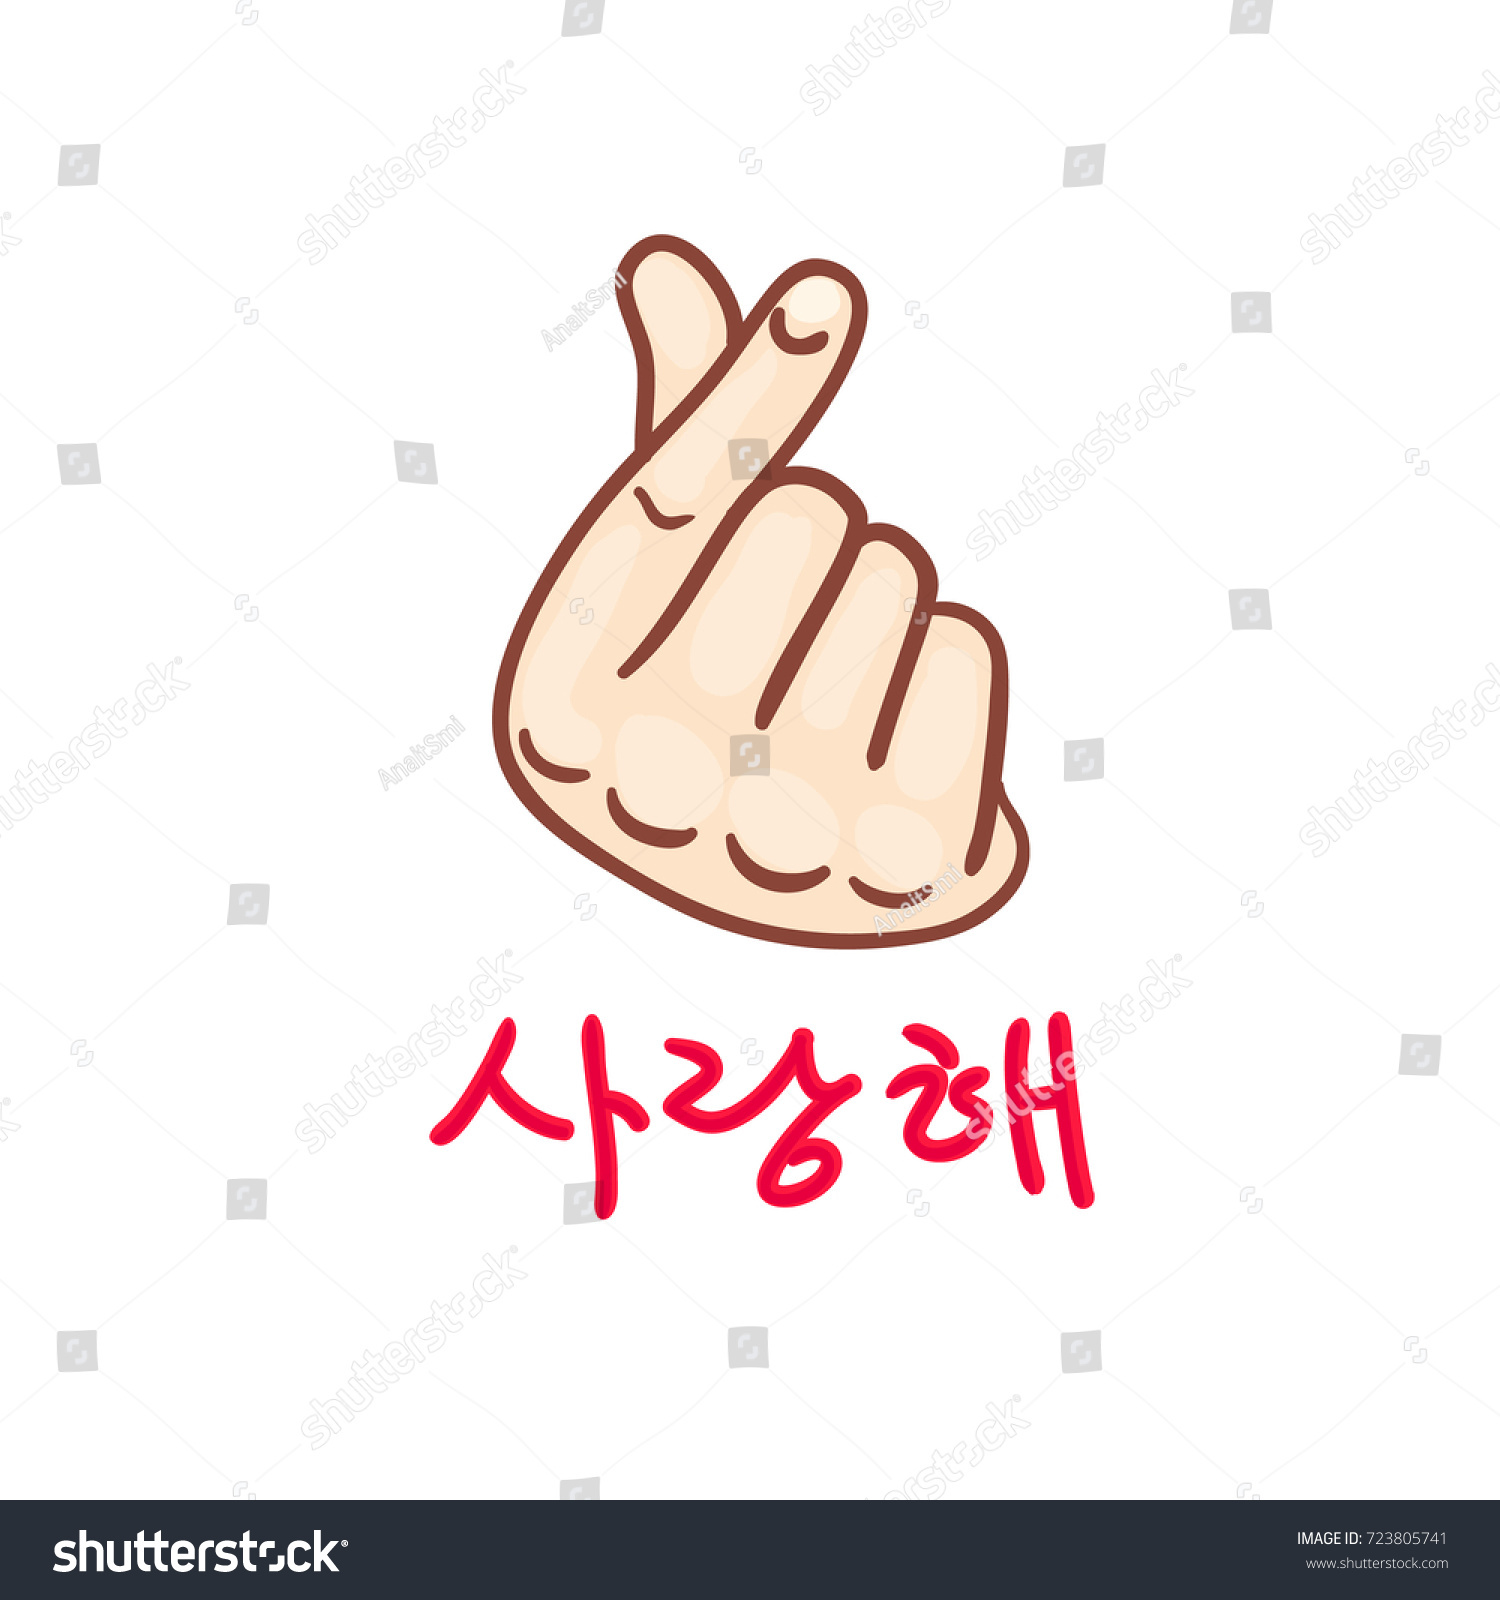 韓国の指の心 愛する ハングル ベクターイラスト 韓国の象徴である手の心 愛の手のジェスチャーのメッセージ ウェブ用にスタイル化された署名アイコンと印刷 手はハートの記号に折りたたまれた のベクター画像素材 ロイヤリティフリー